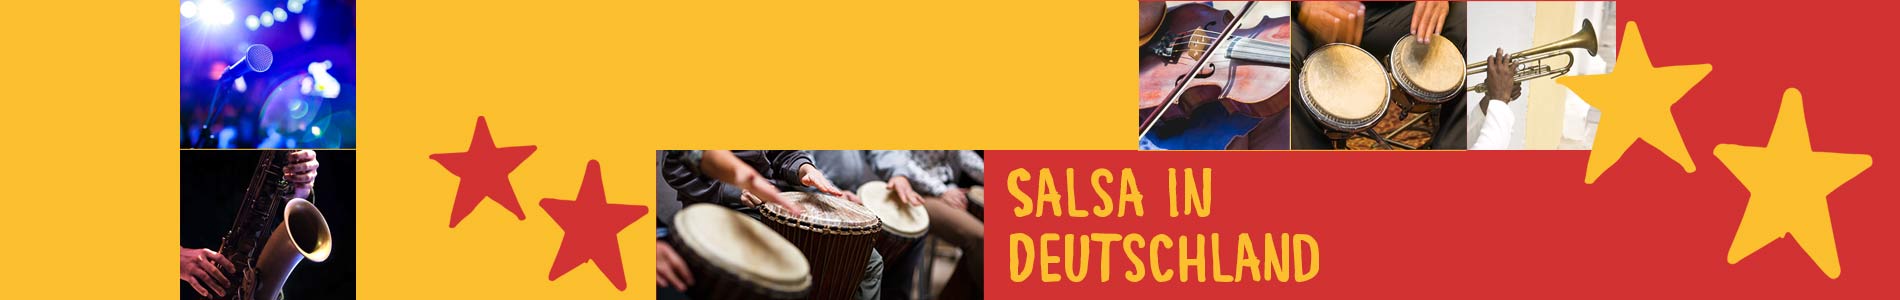 Salsa in Bundenthal – Salsa lernen und tanzen, Tanzkurse, Partys, Veranstaltungen